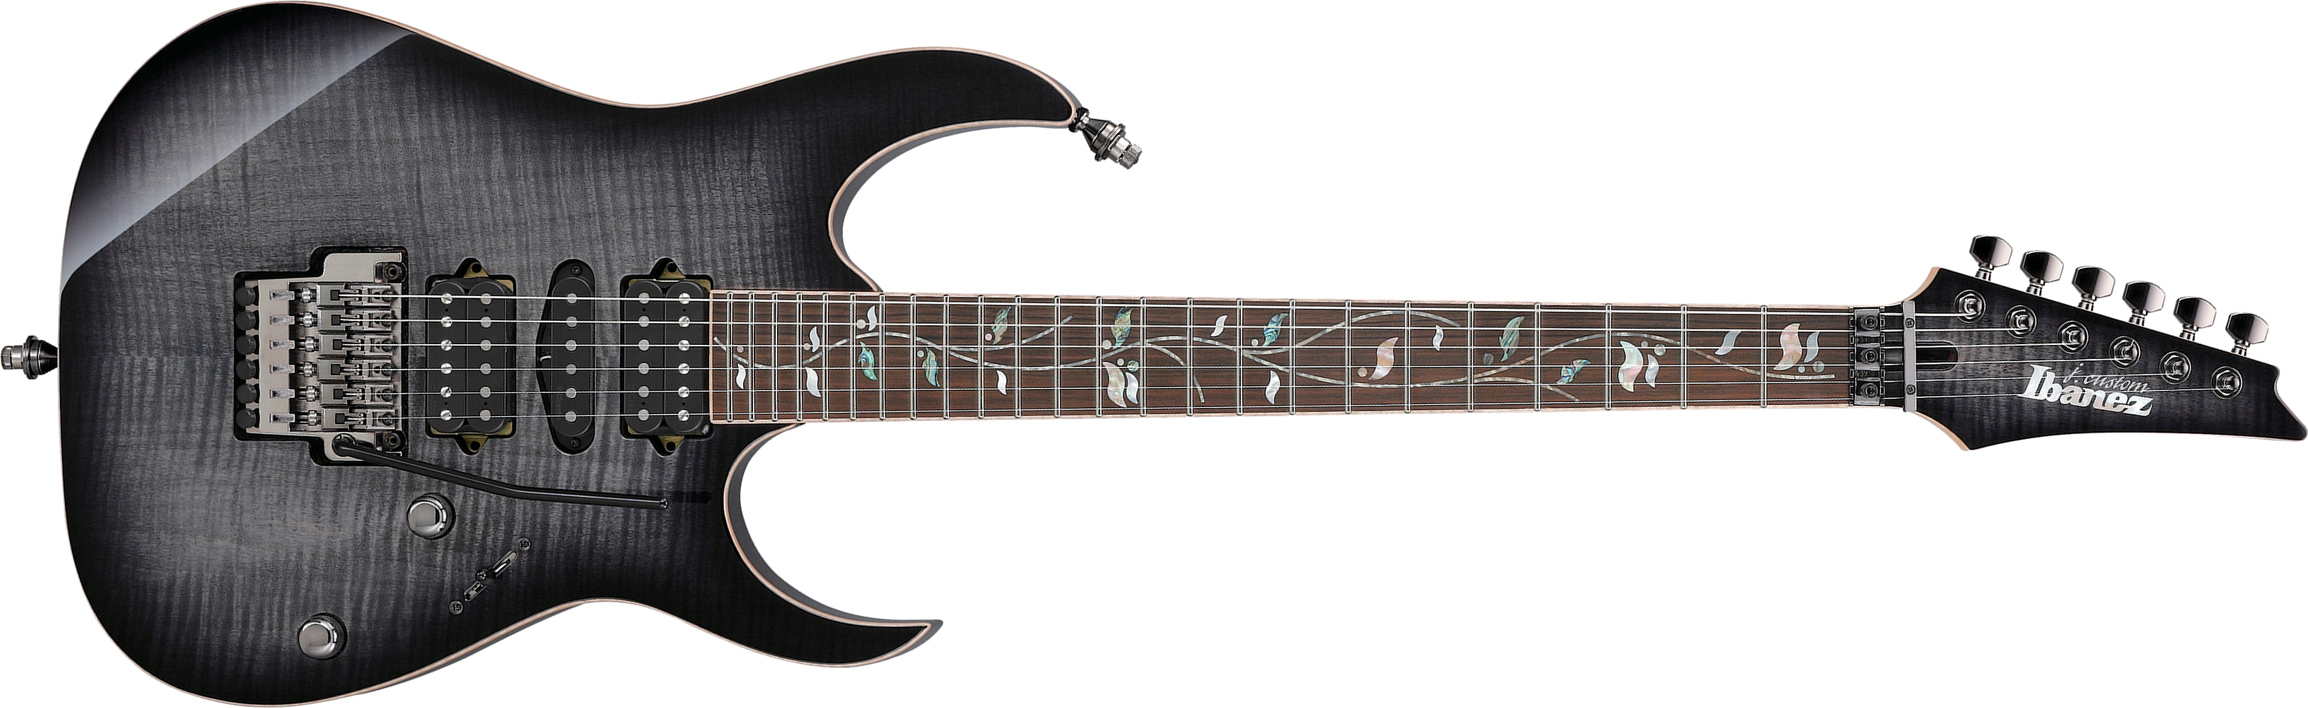 Ibanez Rg8570 Bre J.custom Jap Hsh Dimarzio Fr Eb - Black Rutile - Guitarra eléctrica con forma de str. - Main picture